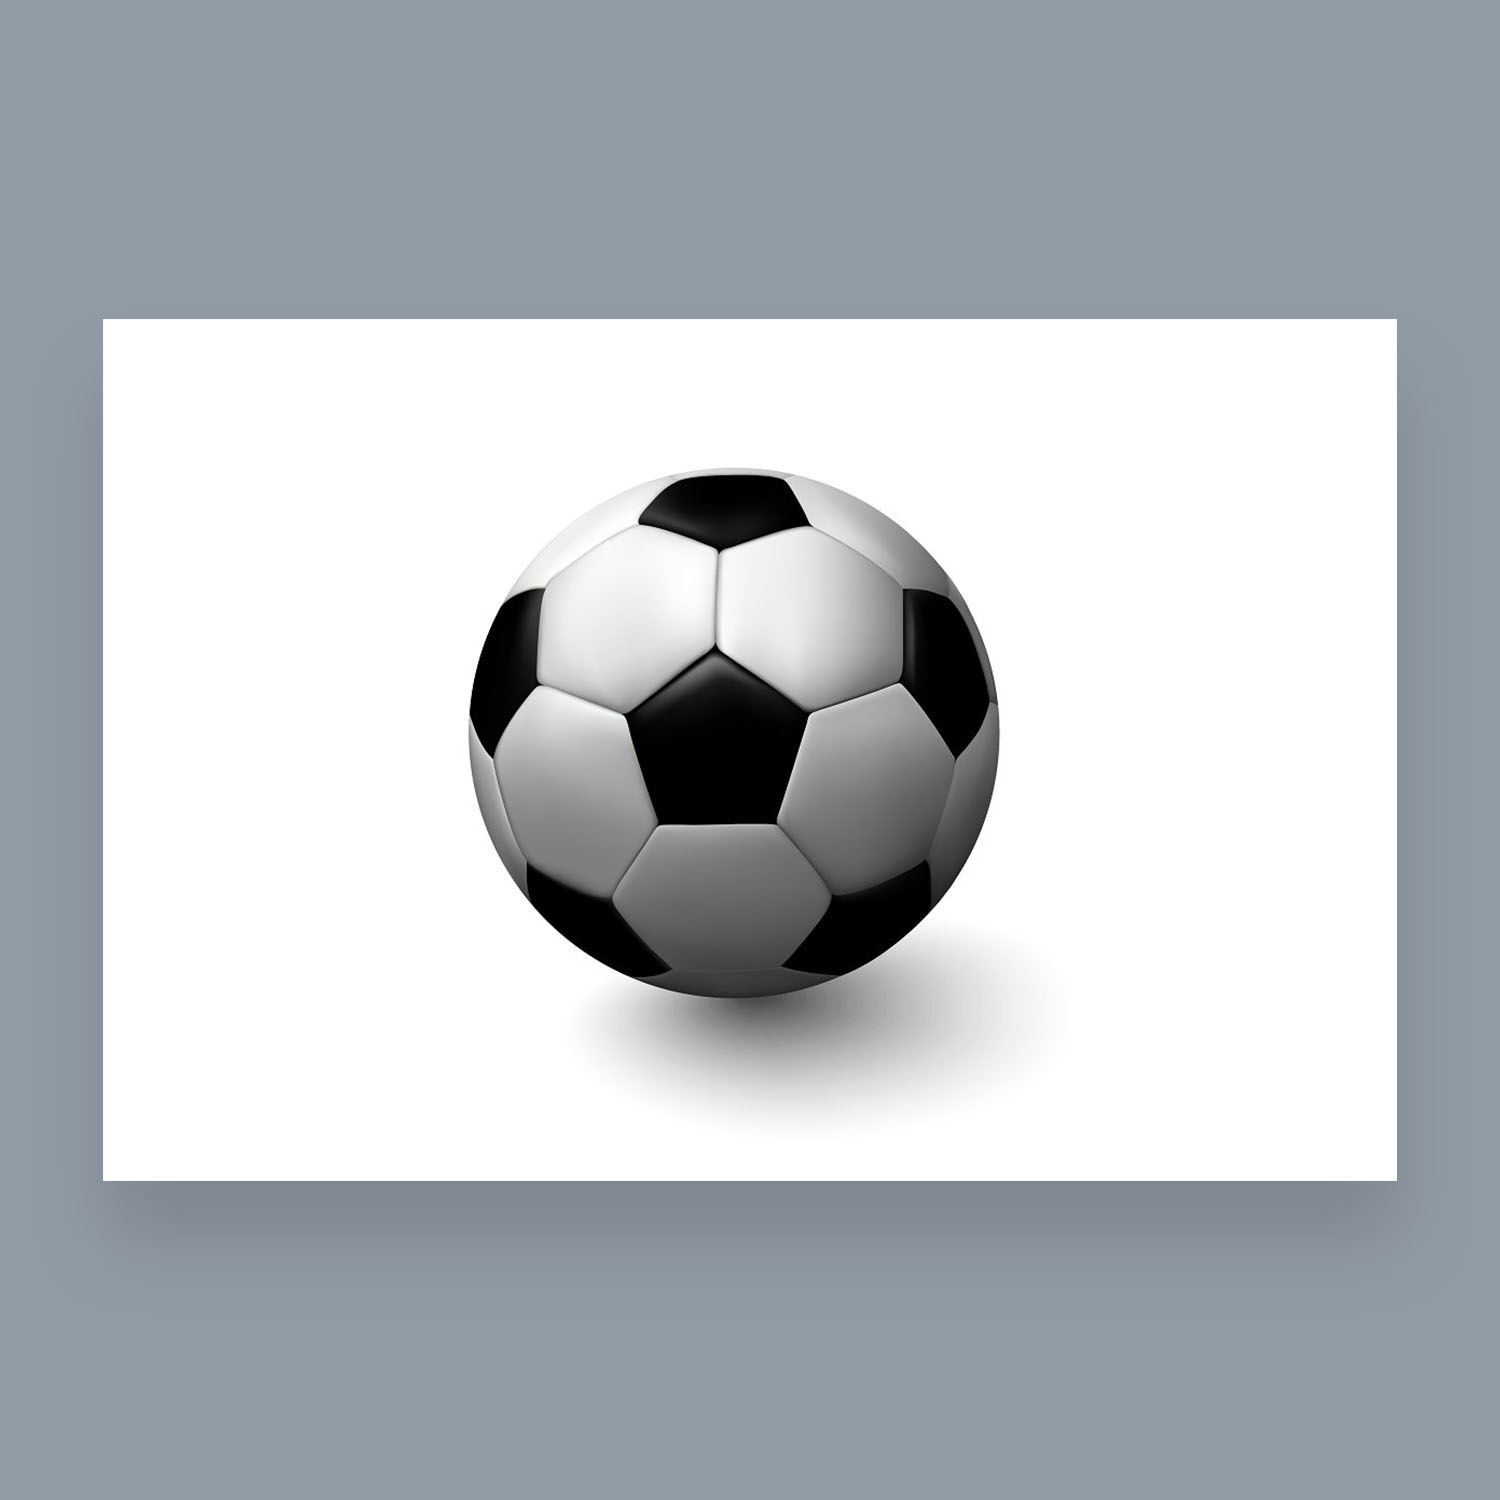 Soccer ball black white.